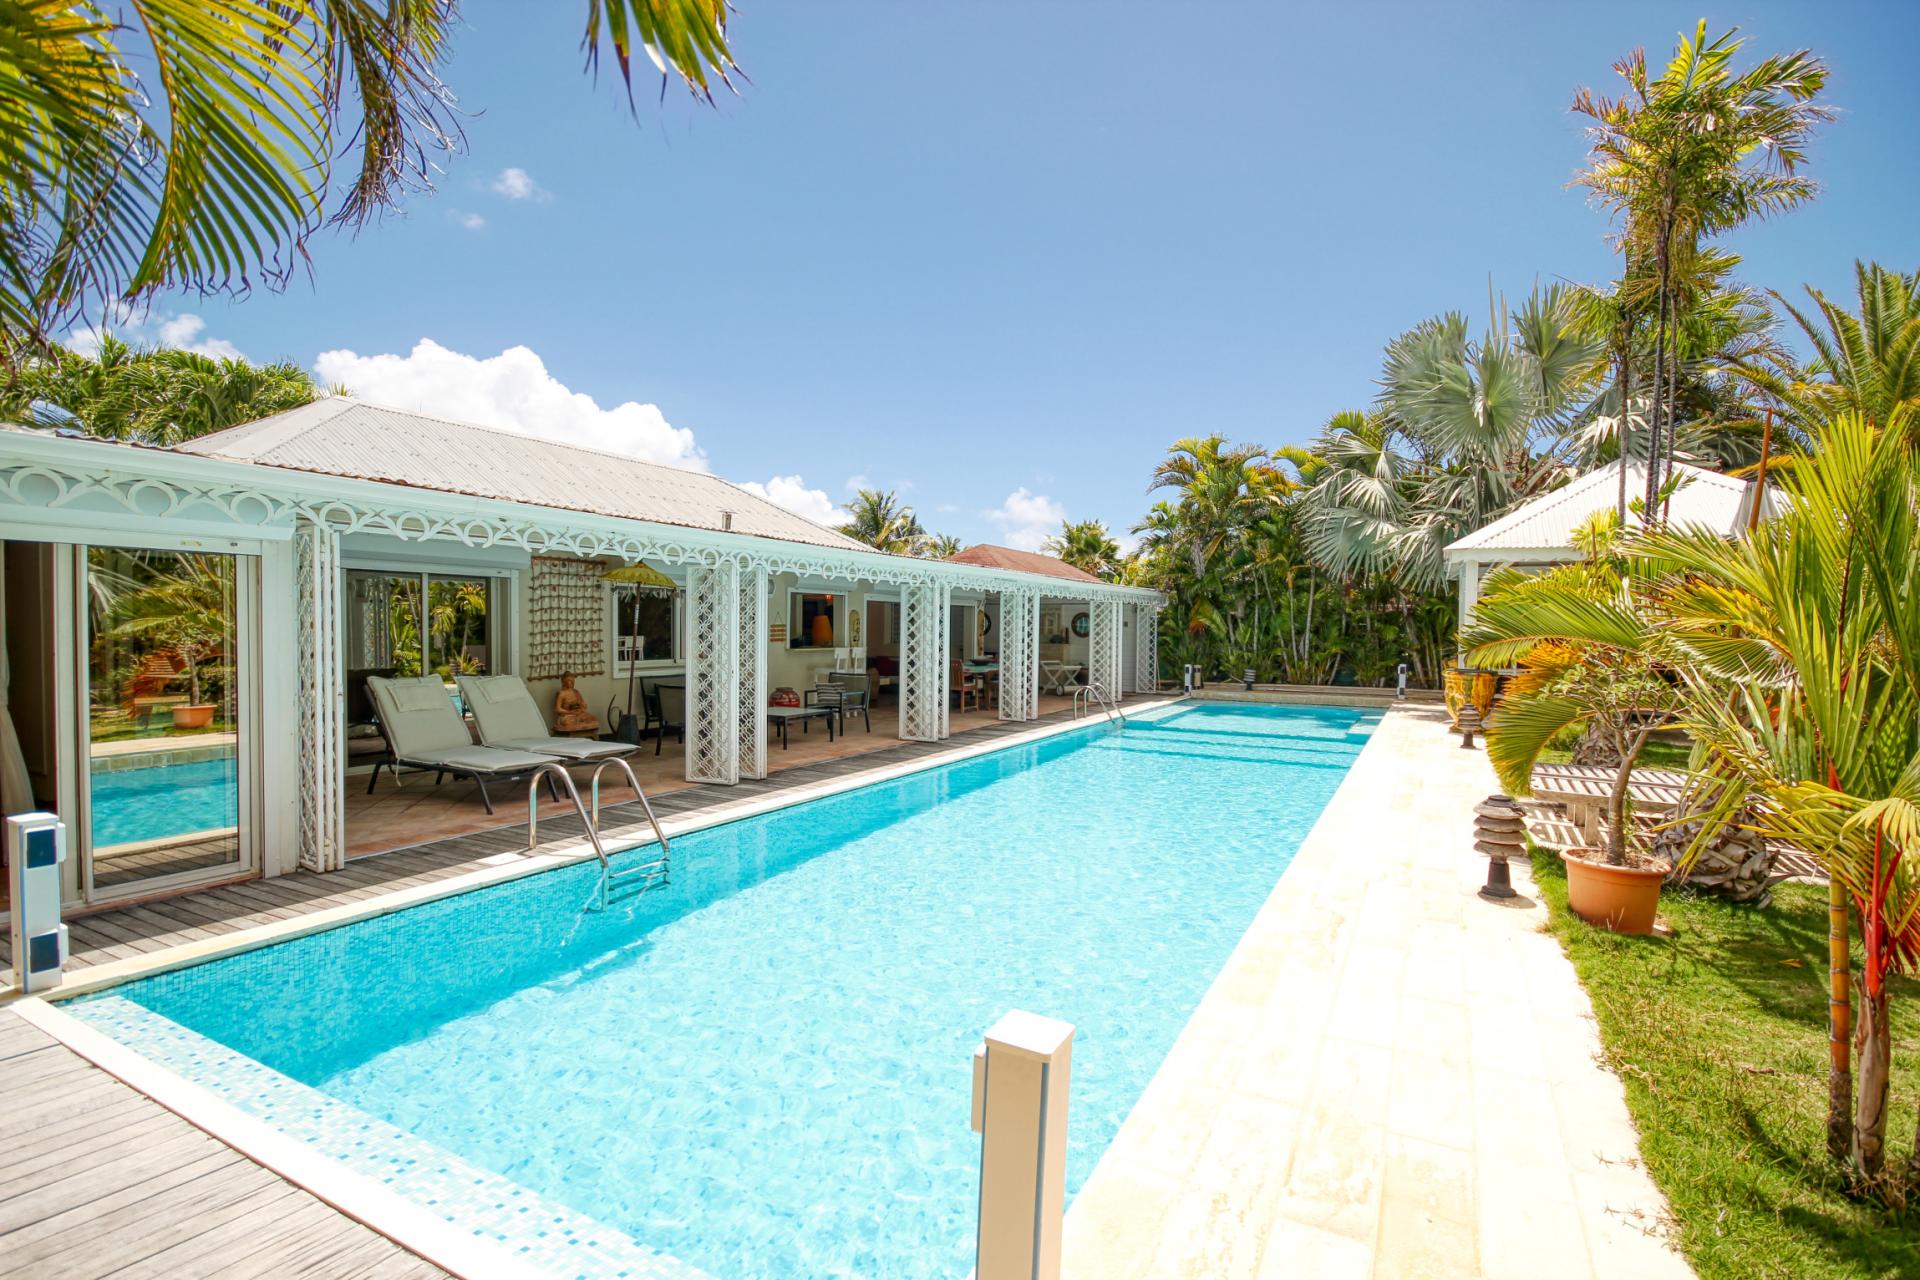 Villa de rêve Guadeloupe - Vue d'ensemble